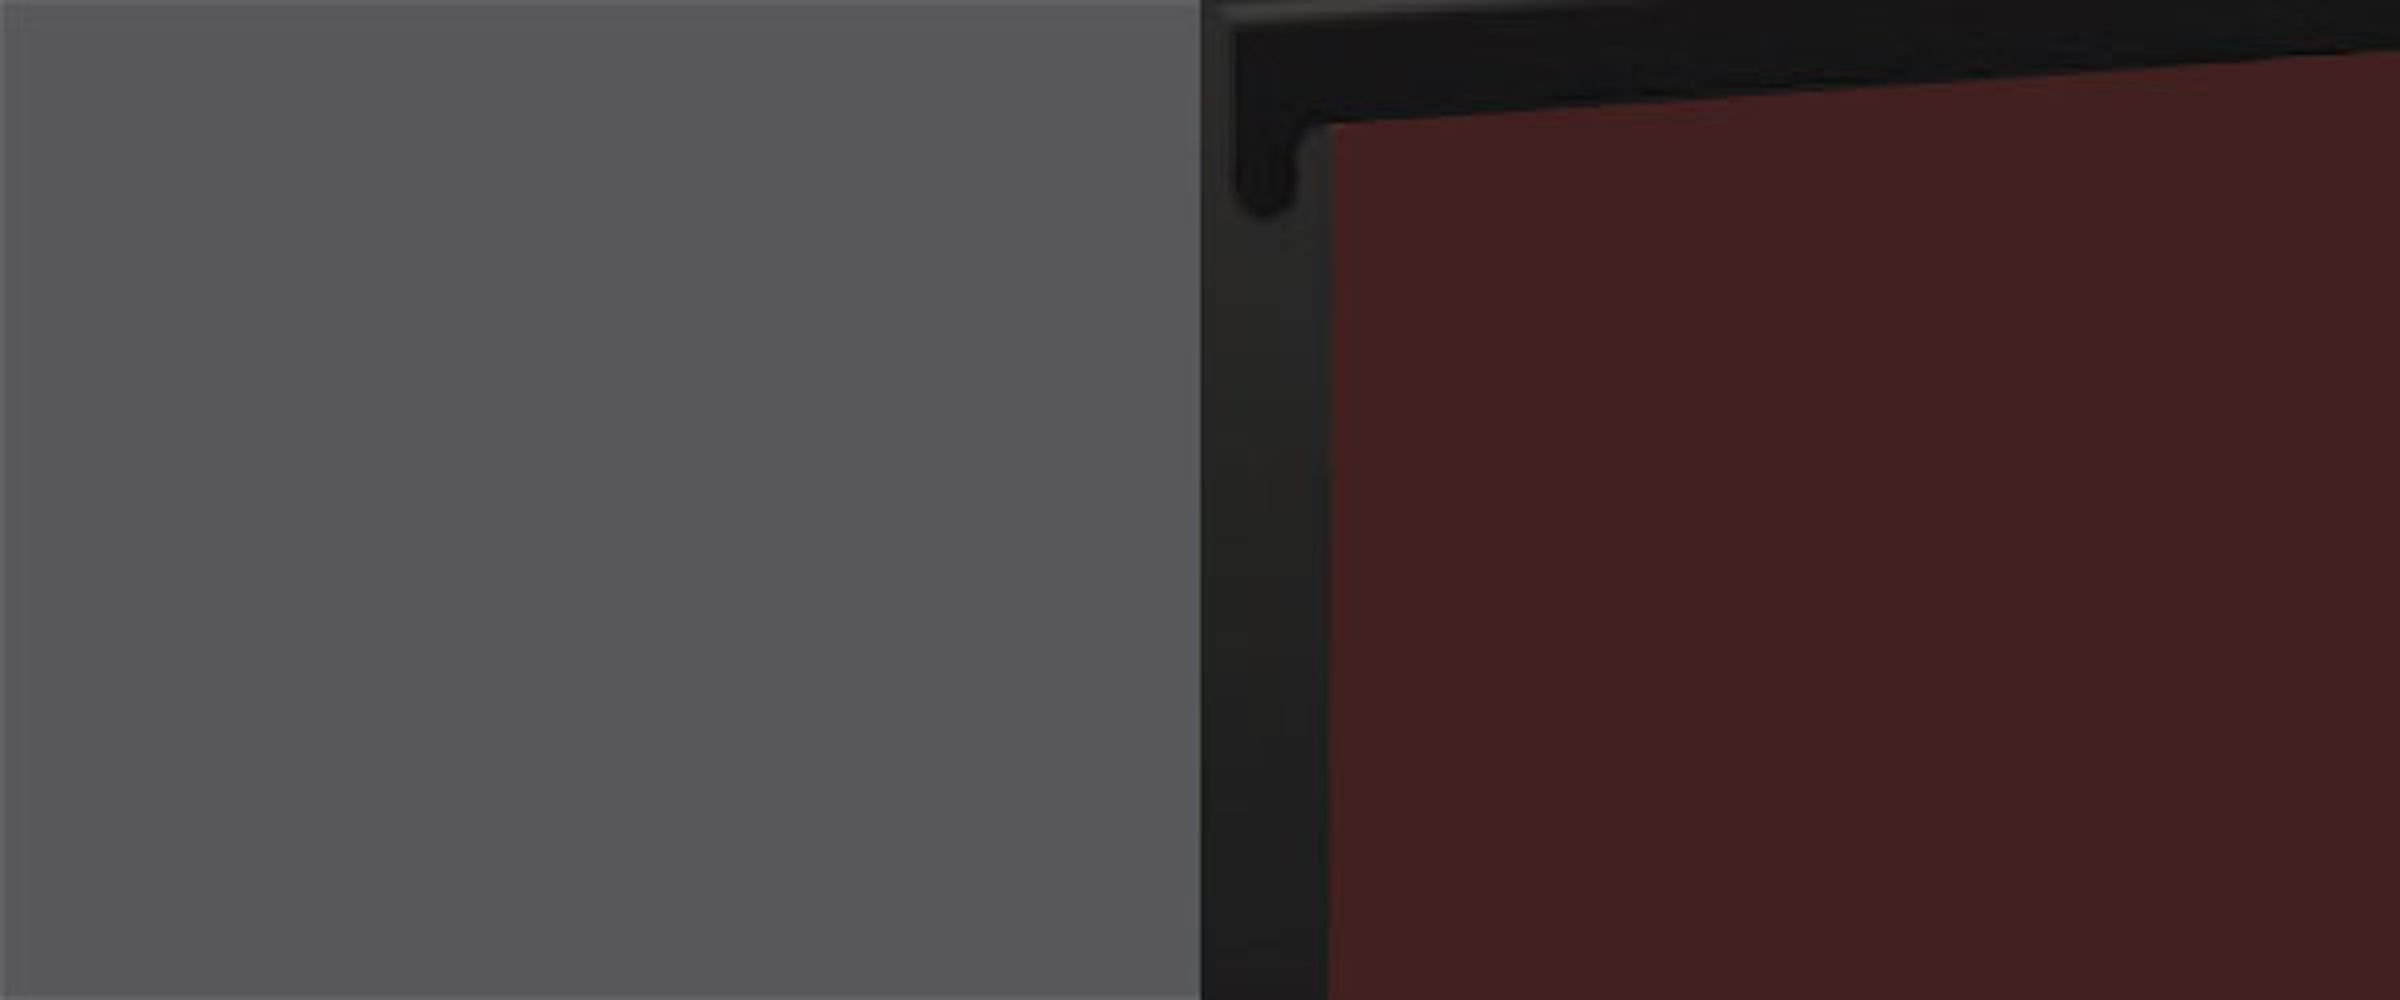 60cm grifflos rubinrot Sockelblende und Front- matt teilintegriert Velden, Sockelfarbe Feldmann-Wohnen wählbar super